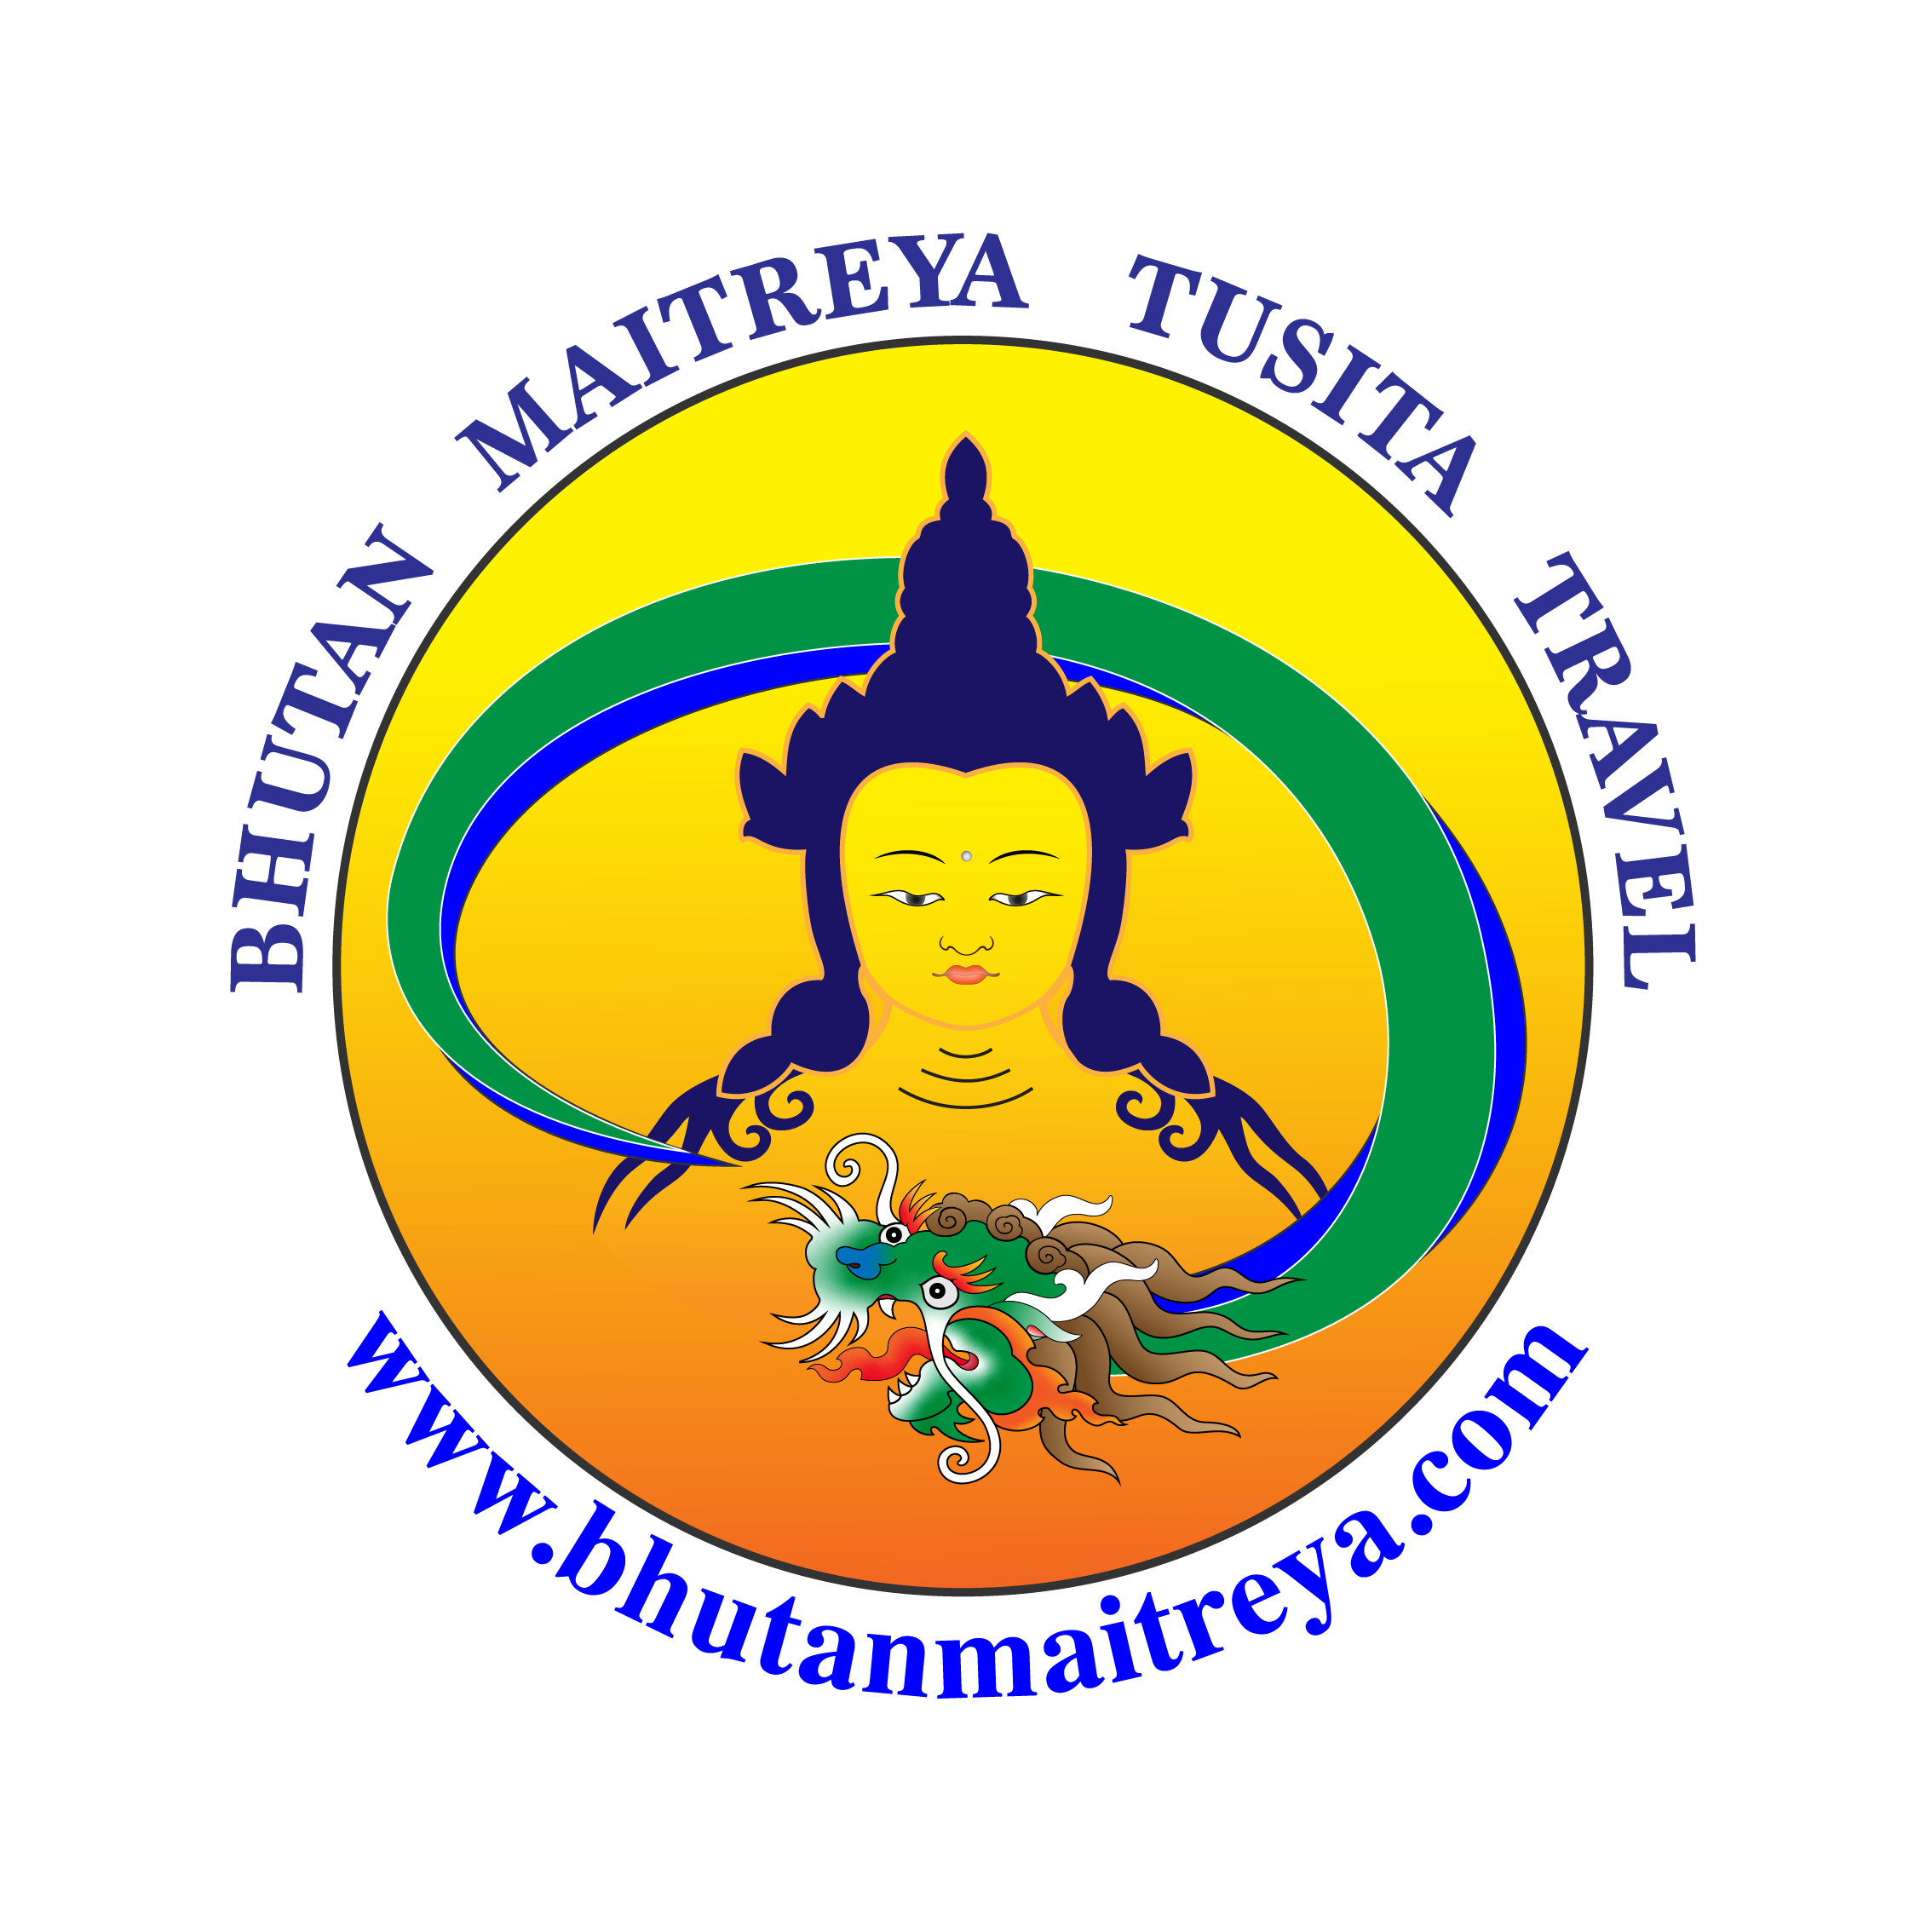 Bhutan Maitreya Tusita Travel